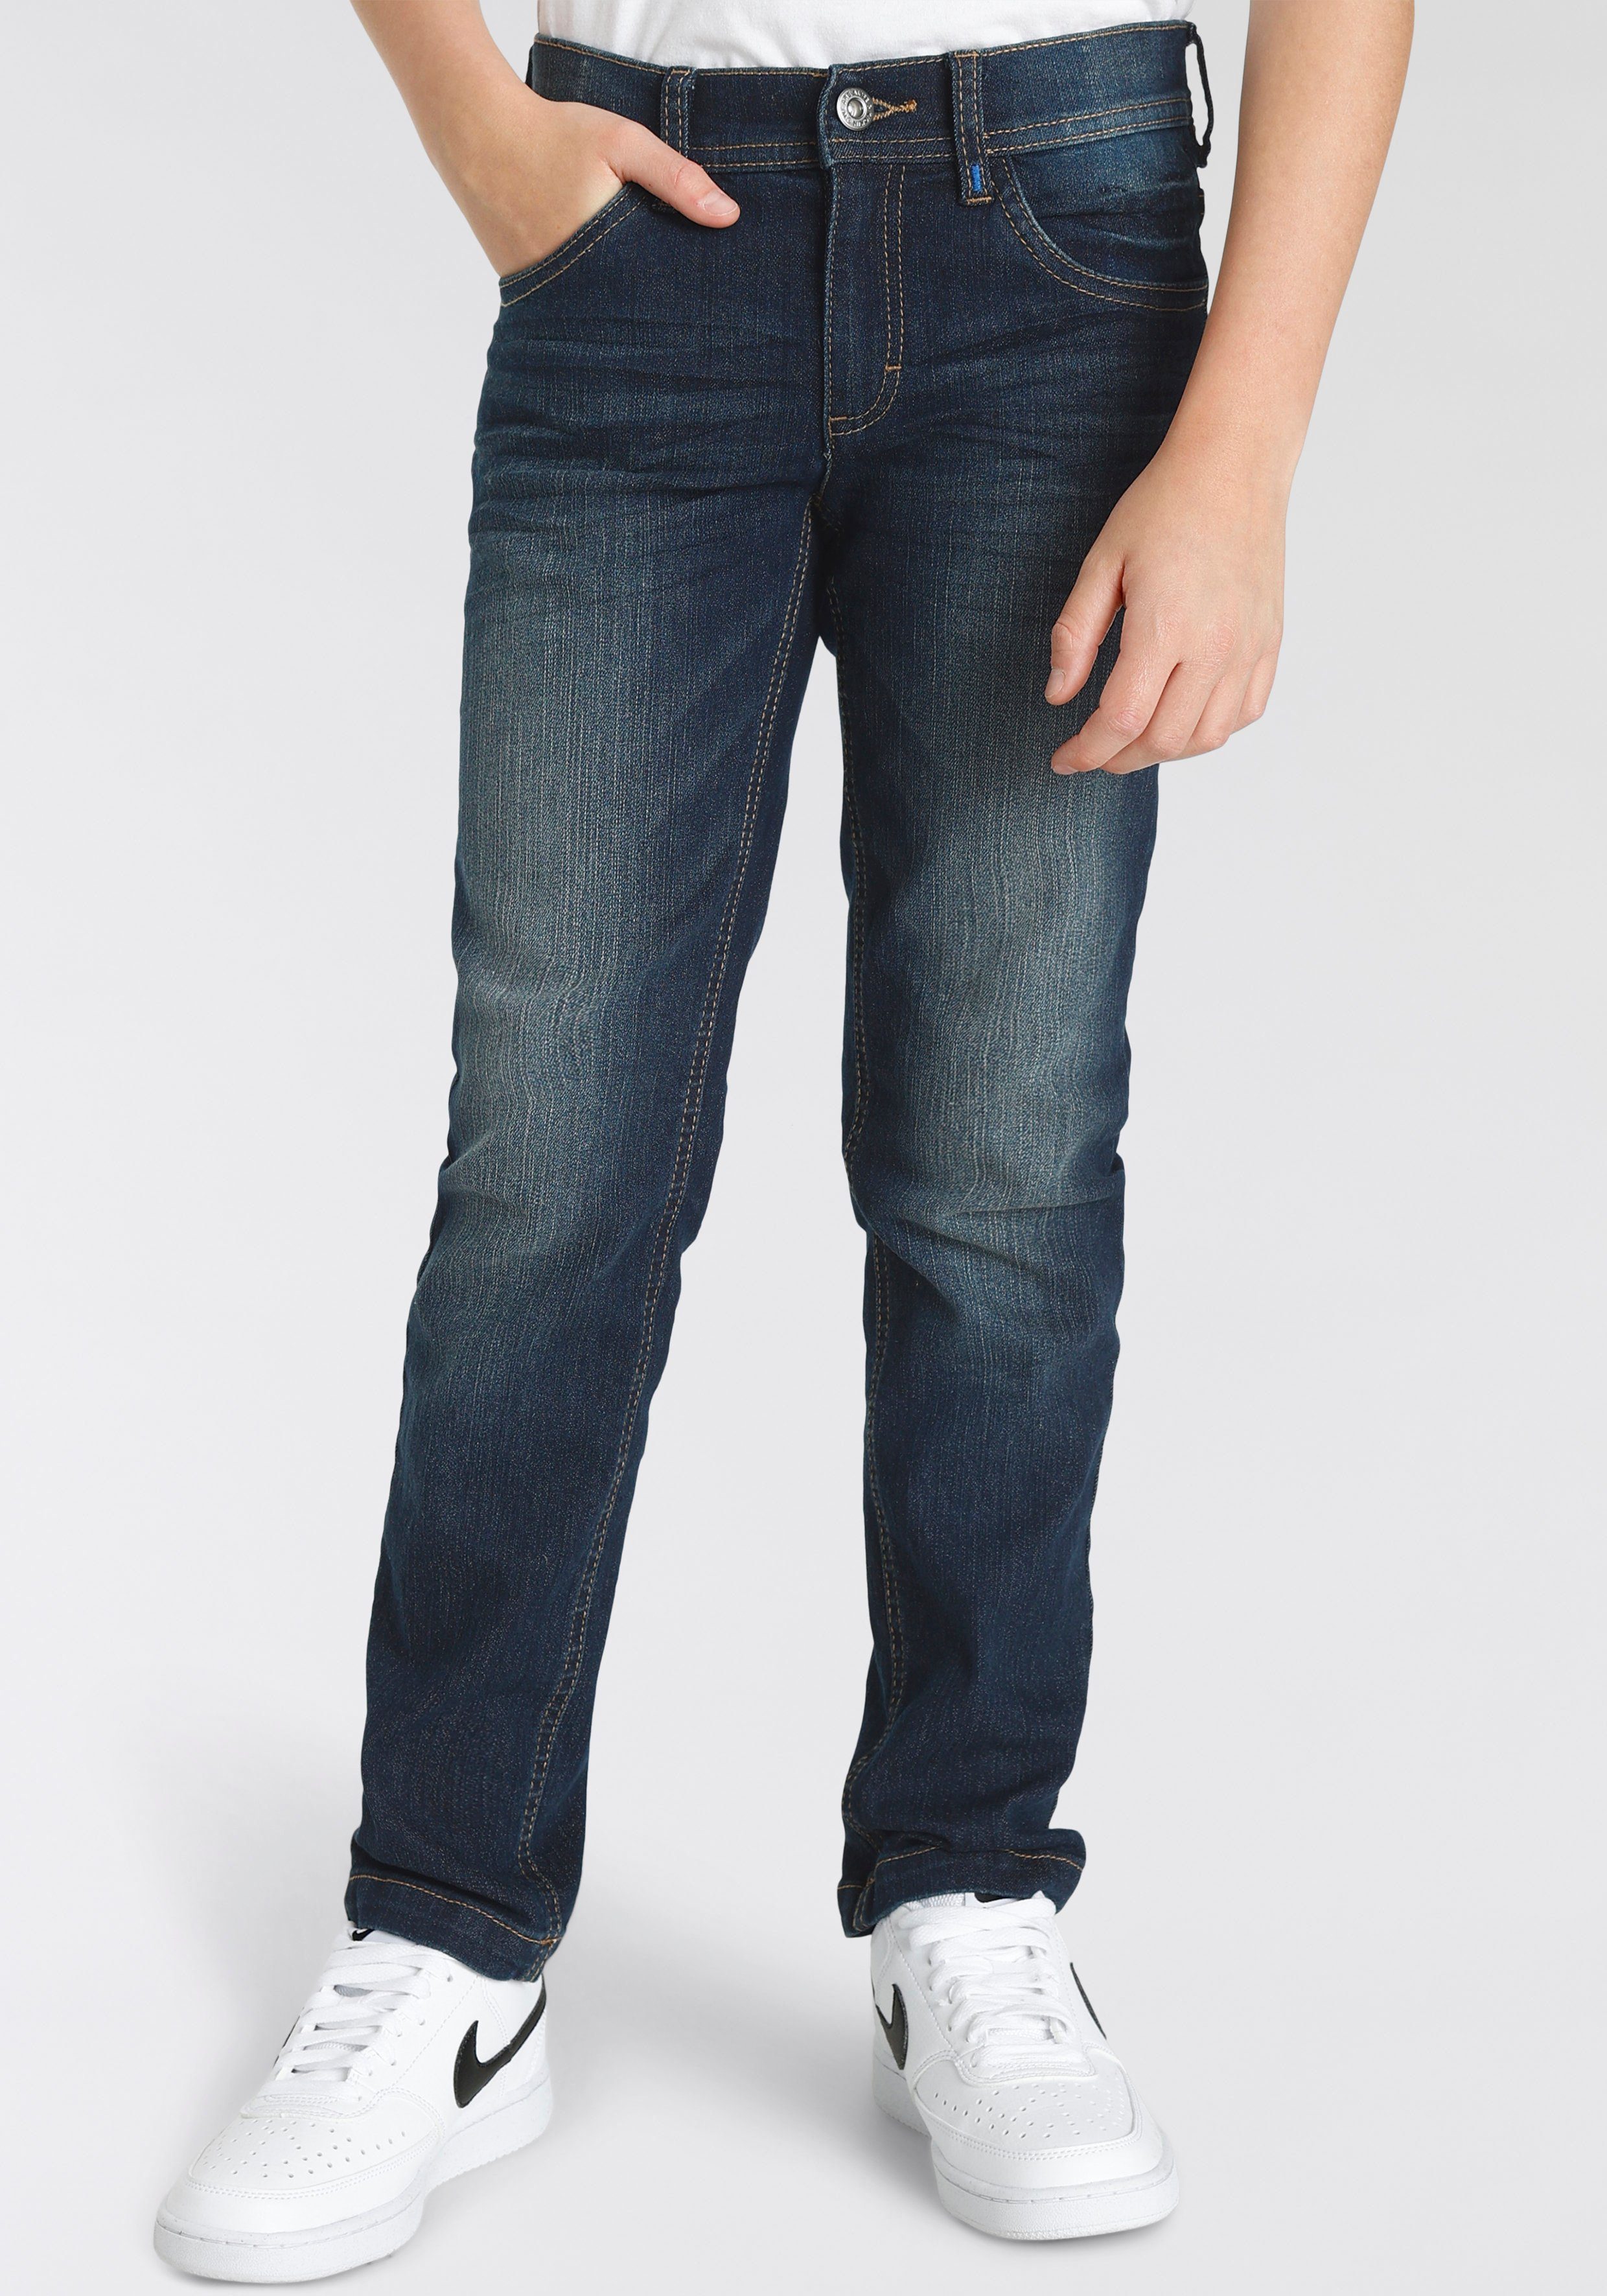 & Kickin mit Straight-Jeans für Hosenbund, schmale Logo-Print Jungen im Alife Form